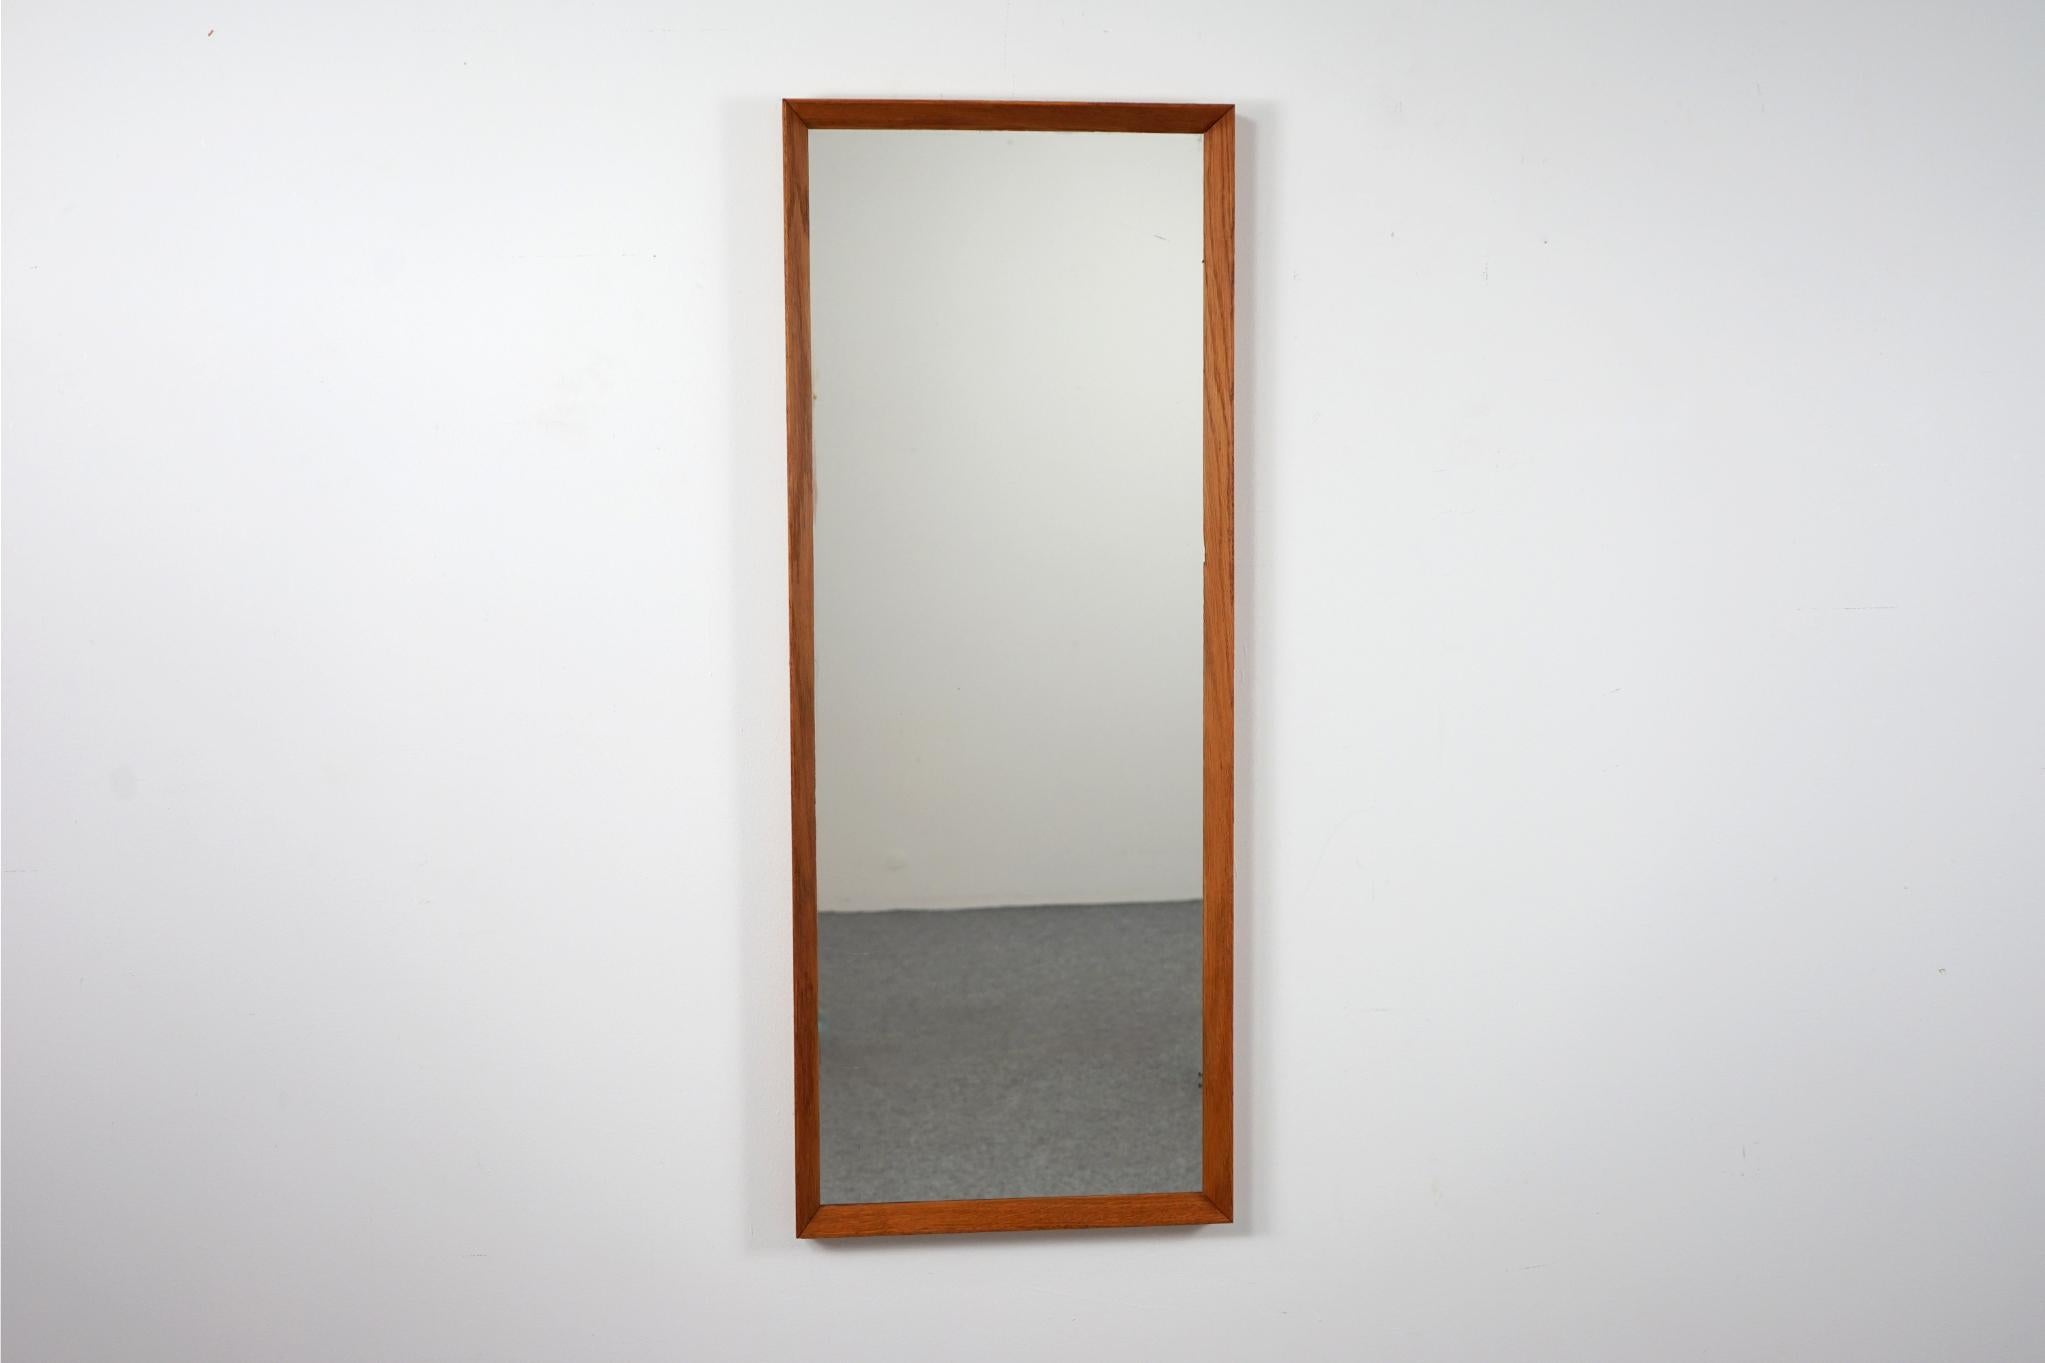 Dänischer moderner Spiegel aus Eiche, ca. 1960. Der Massivholzrahmen zeigt eine wunderschöne Maserung und der Spiegel hat sein Originalglas. Die perfekte Ergänzung für jedes Interieur, besonders in kleinen Wohnungen, Eigentumswohnungen und Lofts, wo